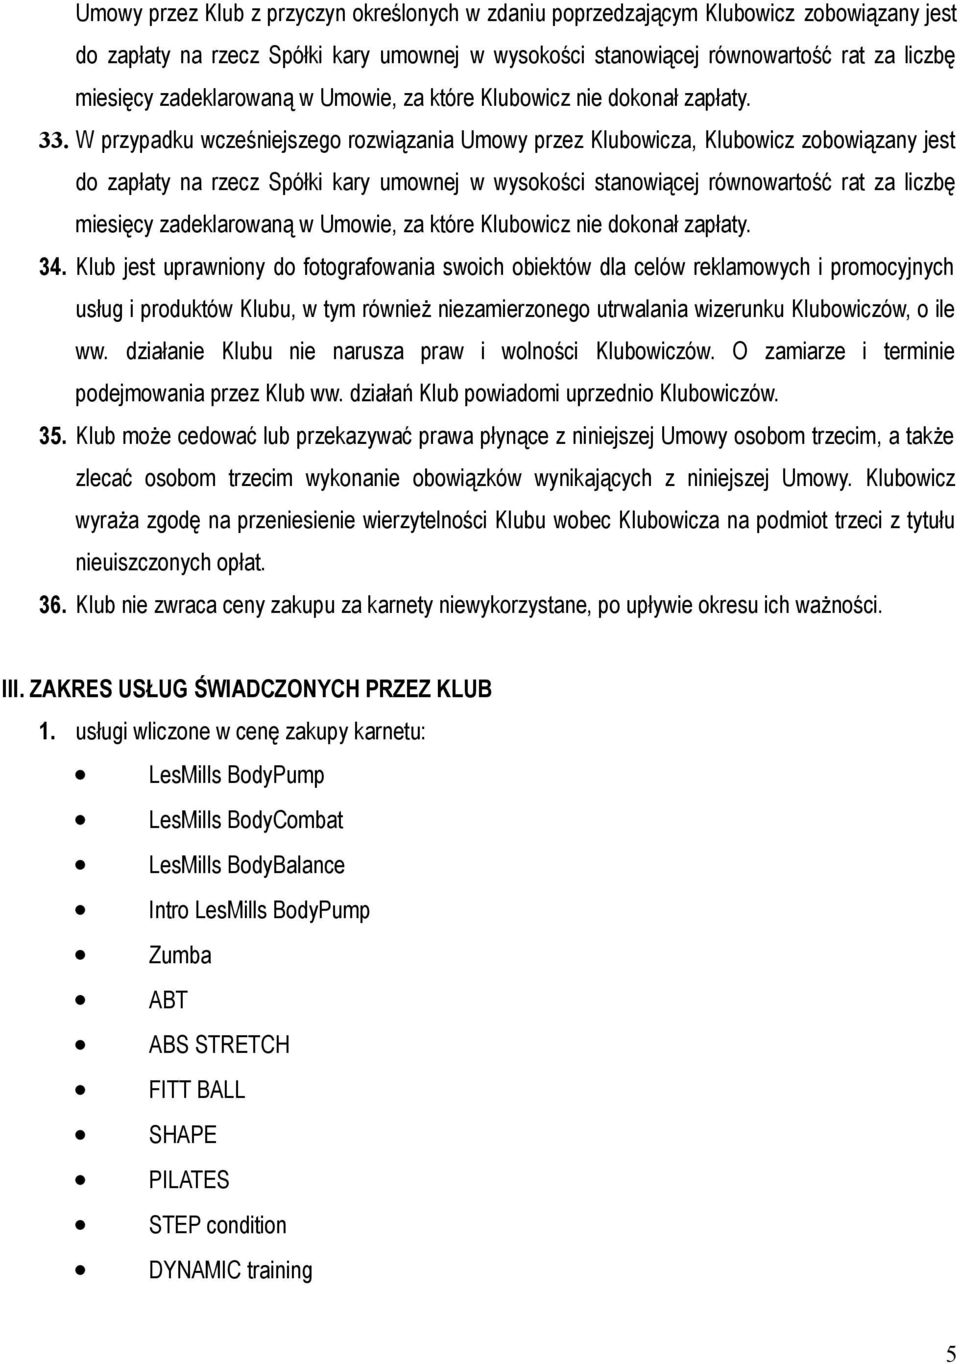 W przypadku wcześniejszego rozwiązania Umowy przez Klubowicza, Klubowicz zobowiązany jest do zapłaty na rzecz Spółki kary umownej w wysokości stanowiącej równowartość rat za liczbę miesięcy